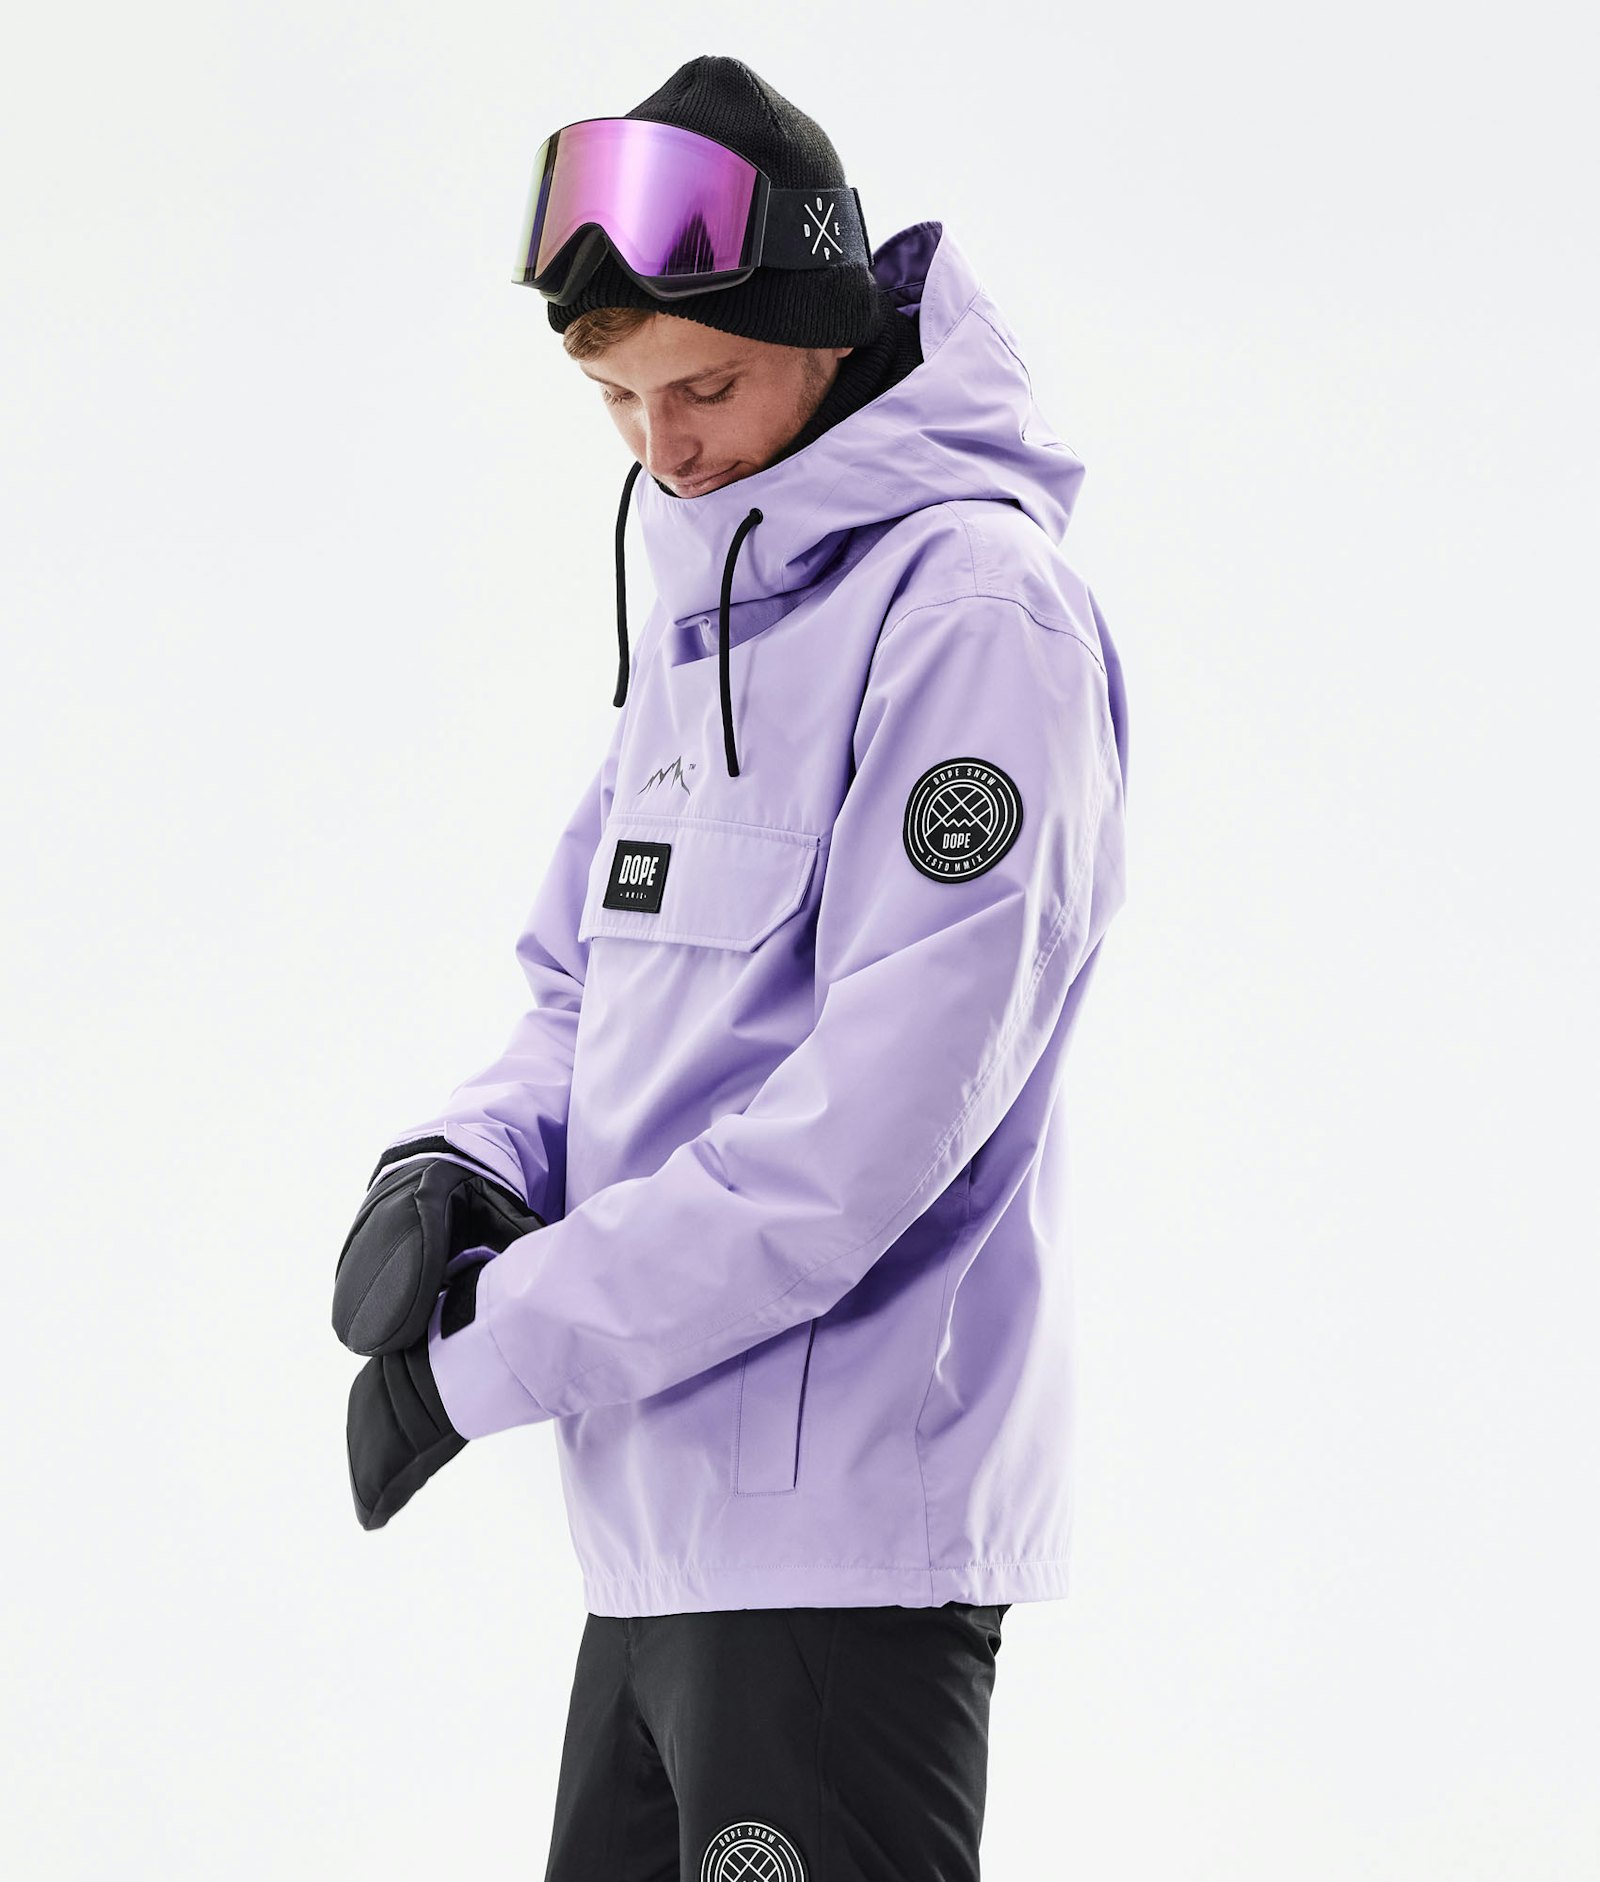 Blizzard 2021 Snowboard jas Heren Faded Violet